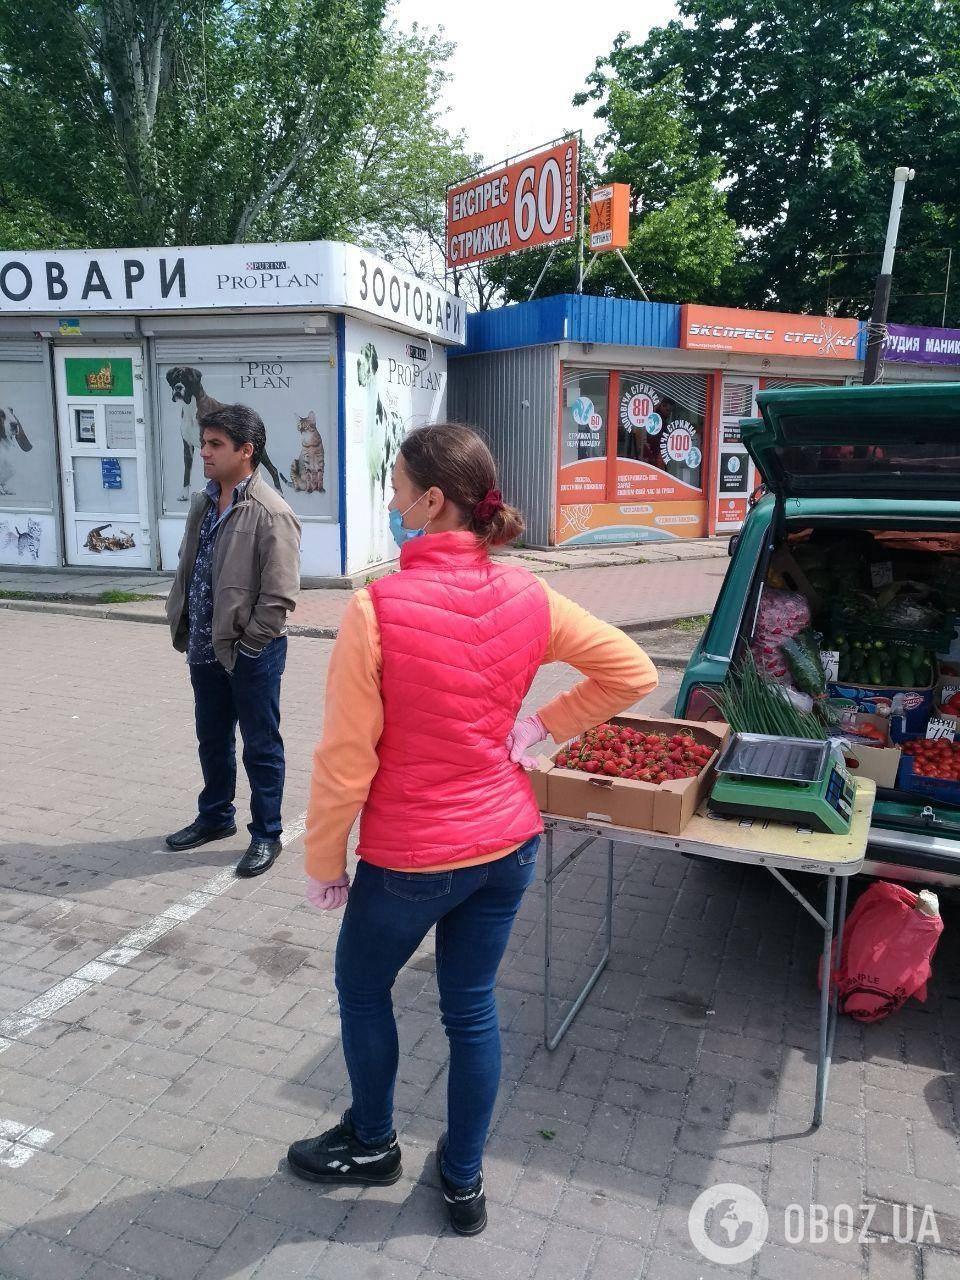 У Києві розгорнулася стихійна торгівля: жителі бояться спалаху коронавірусу